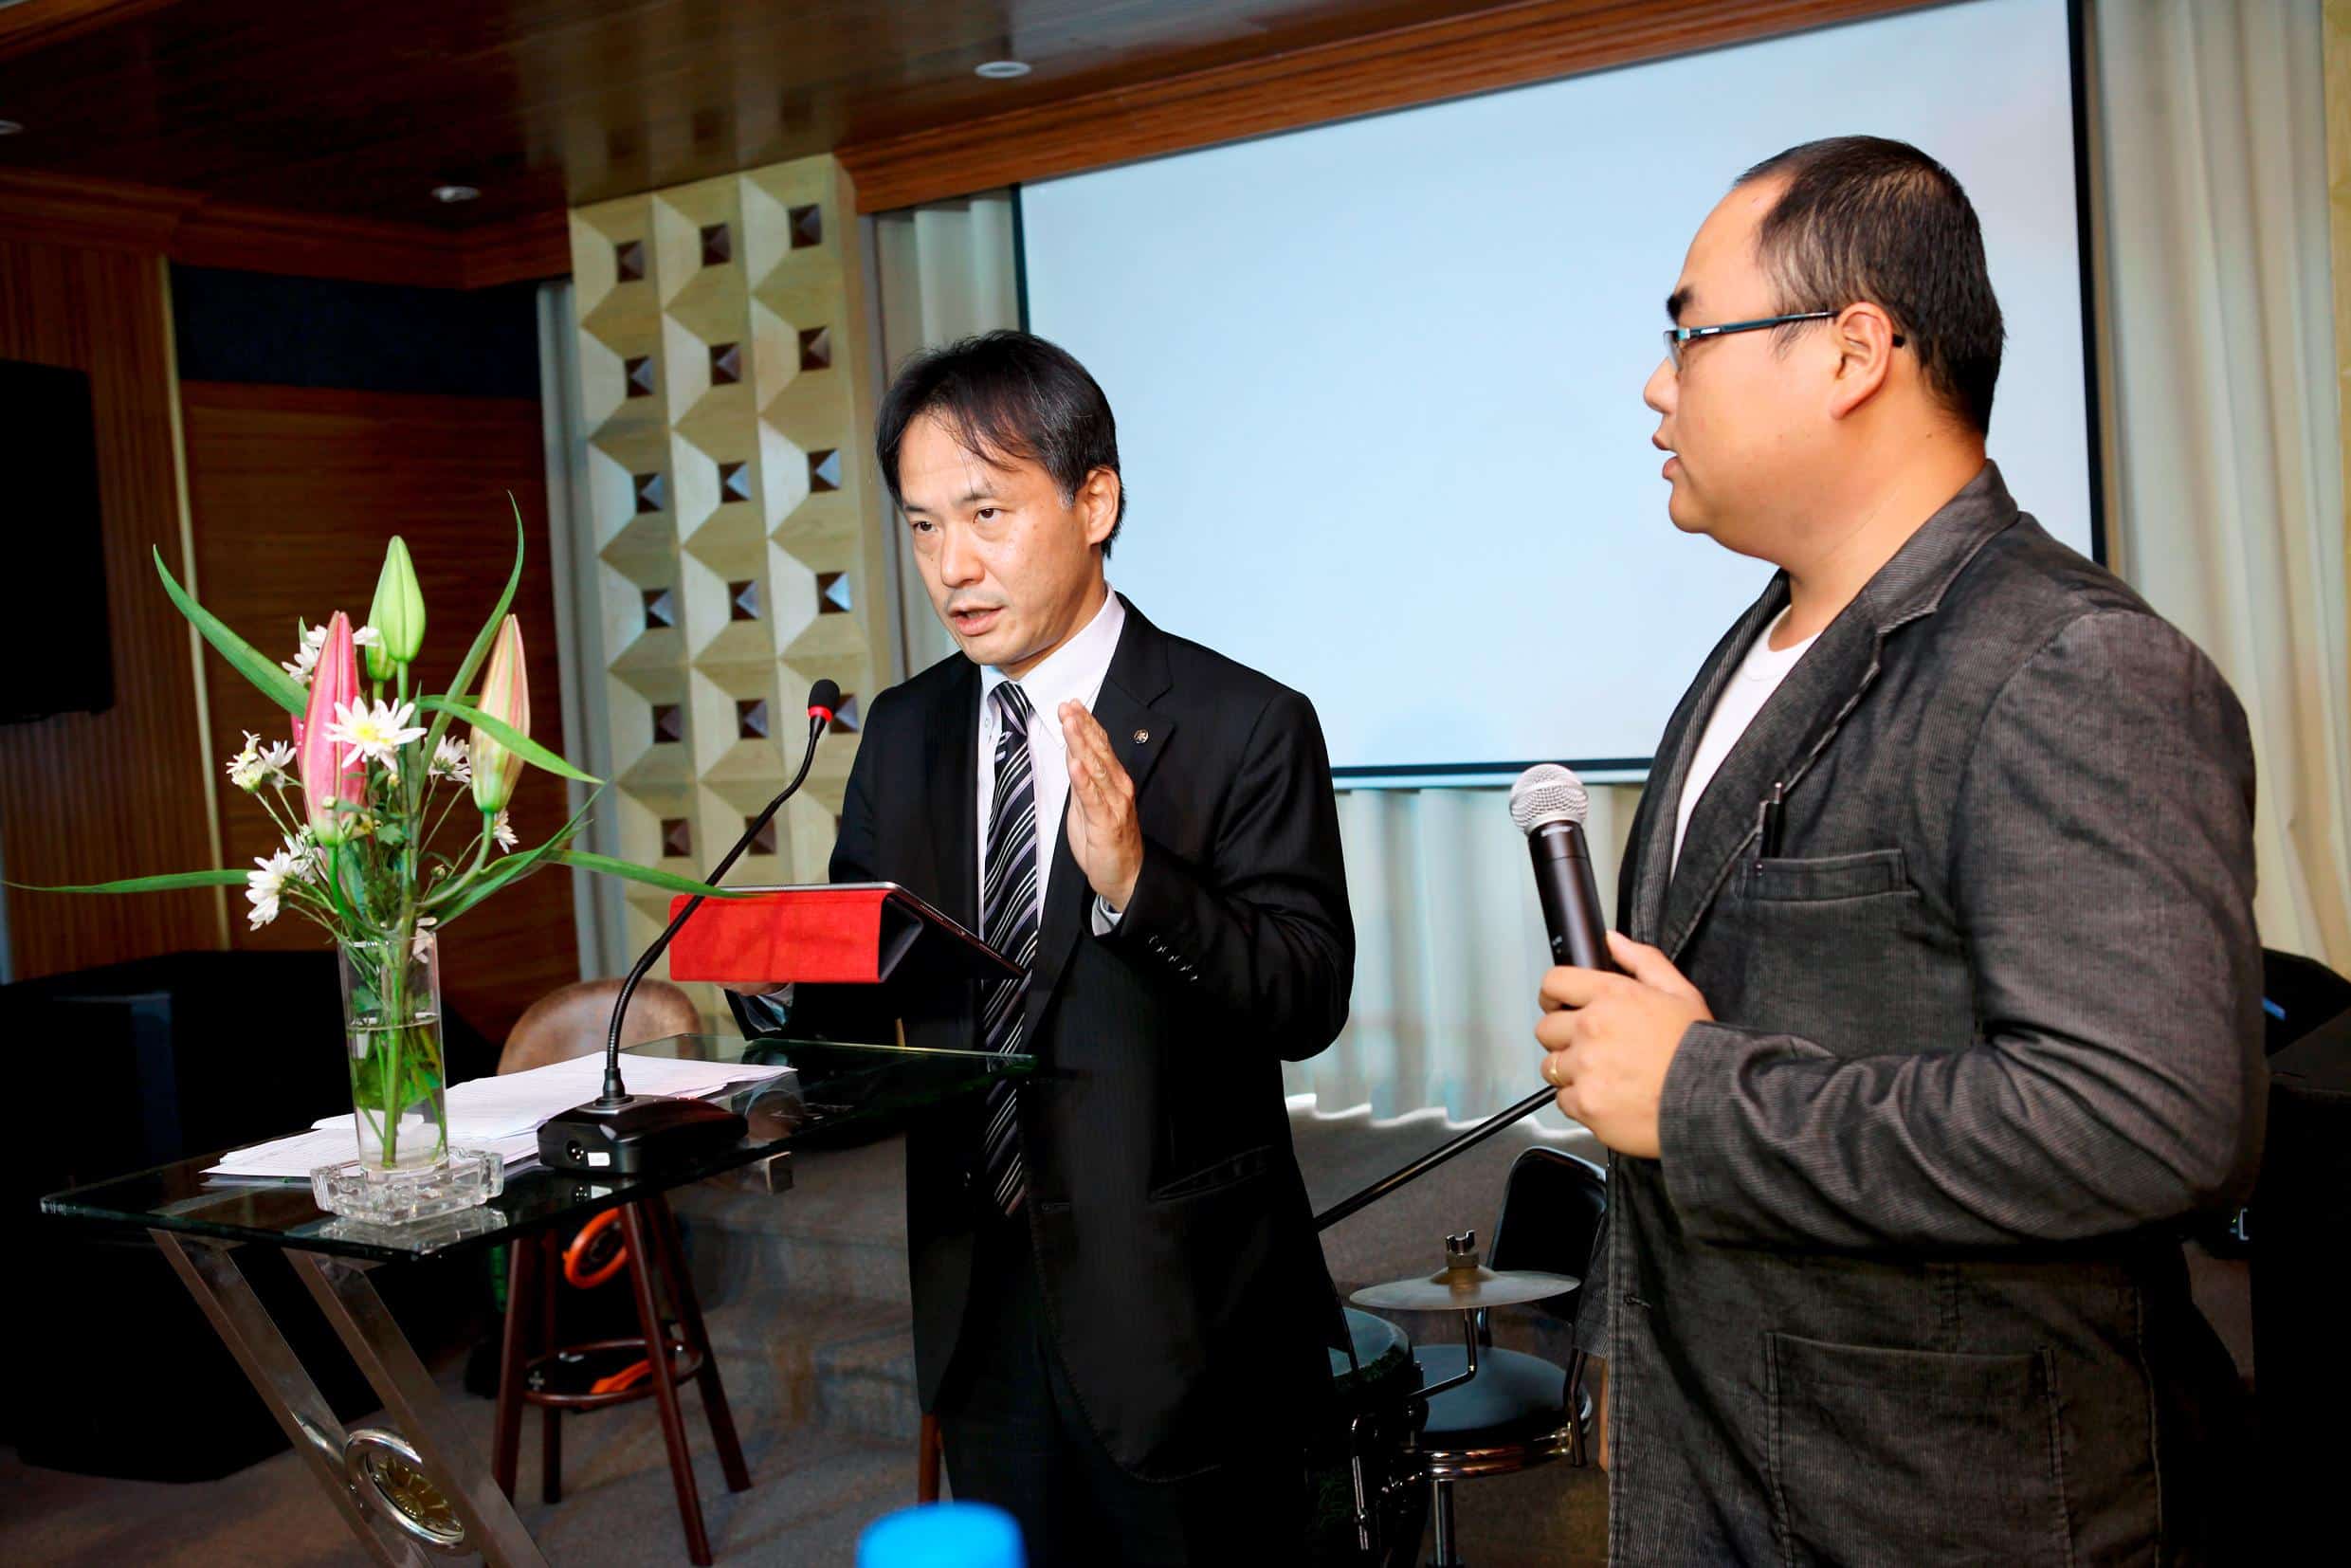 Giám đốc kinh doanh Yamaha Việt Nam – ông Shinya Araki tặng hoa chúc mừng Trung Chính Audio nhân dịp khai trương cơ sở mới